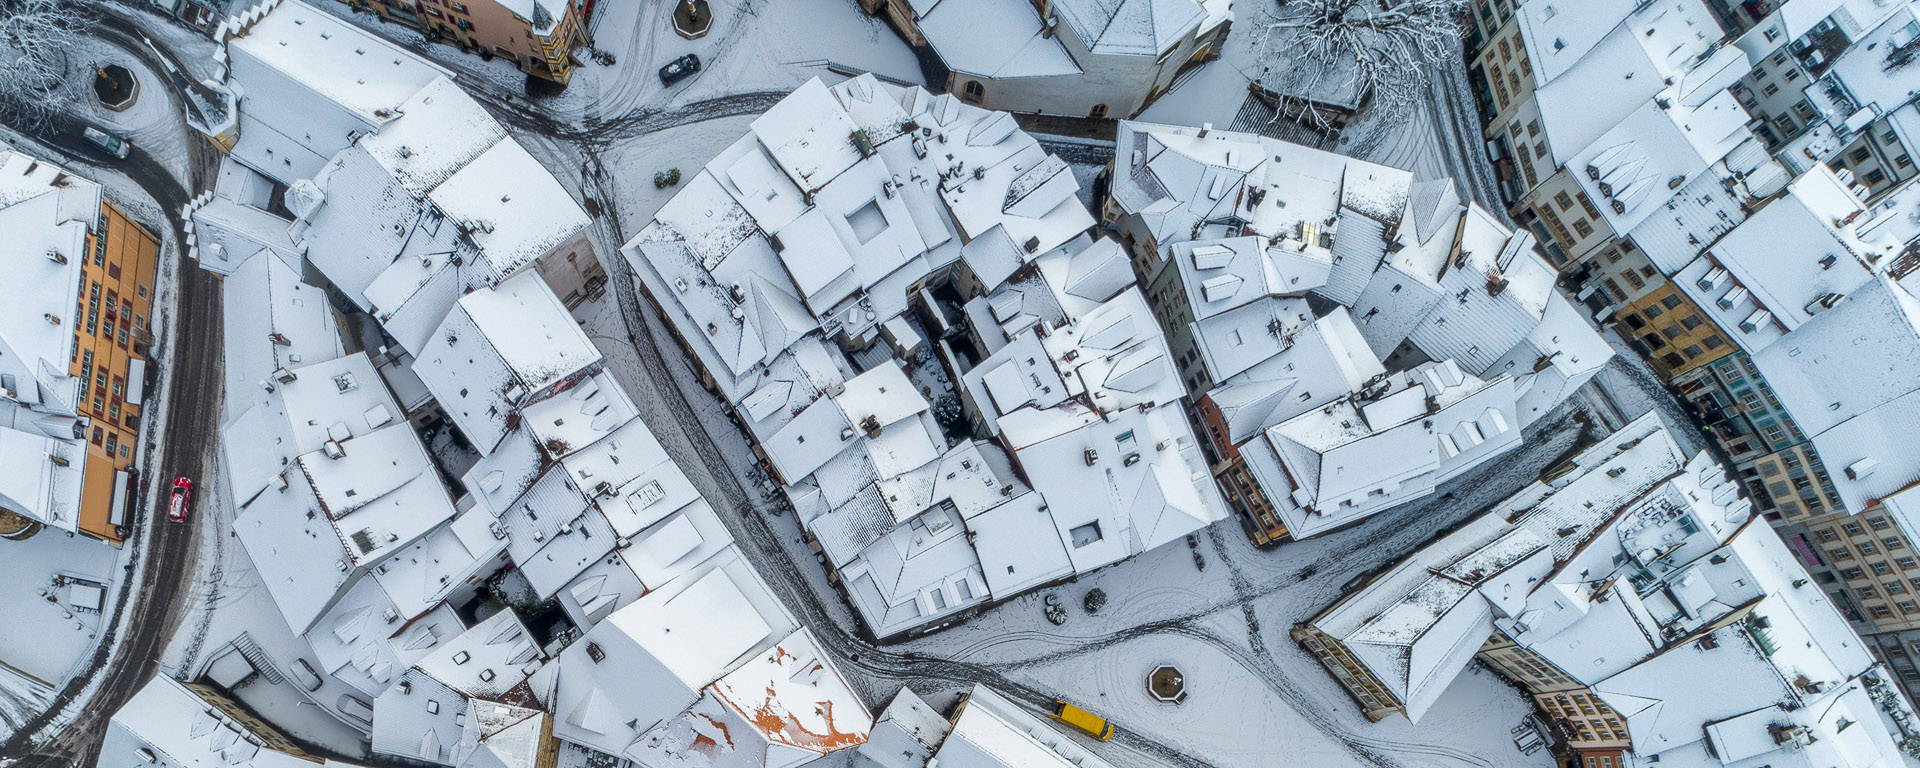 Altstadt Biel, Winteraufnahme aus der Luft gesehen.